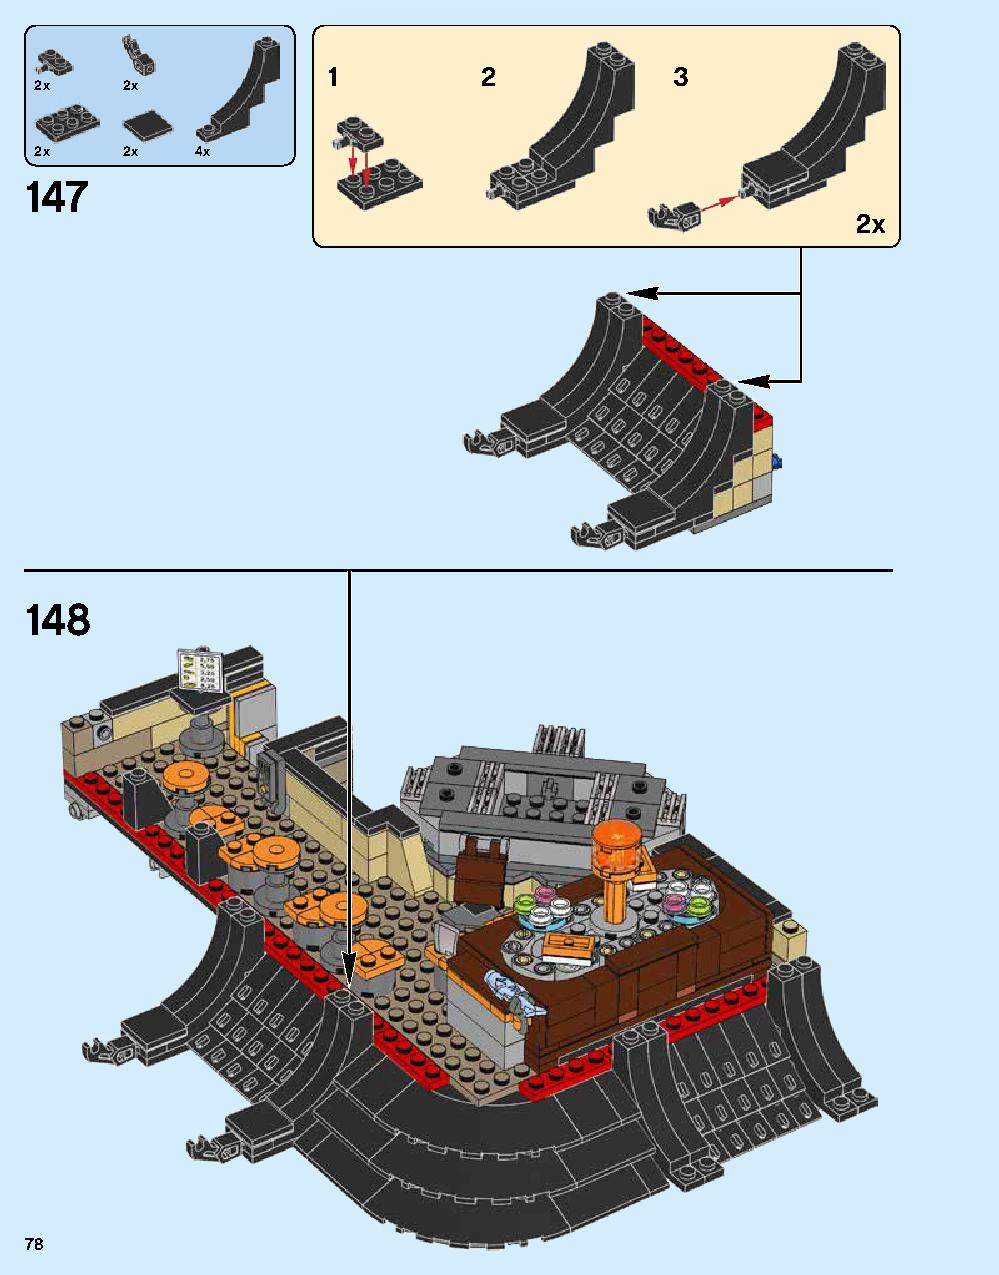 ニンジャゴー シティ 70620 レゴの商品情報 レゴの説明書・組立方法 78 page